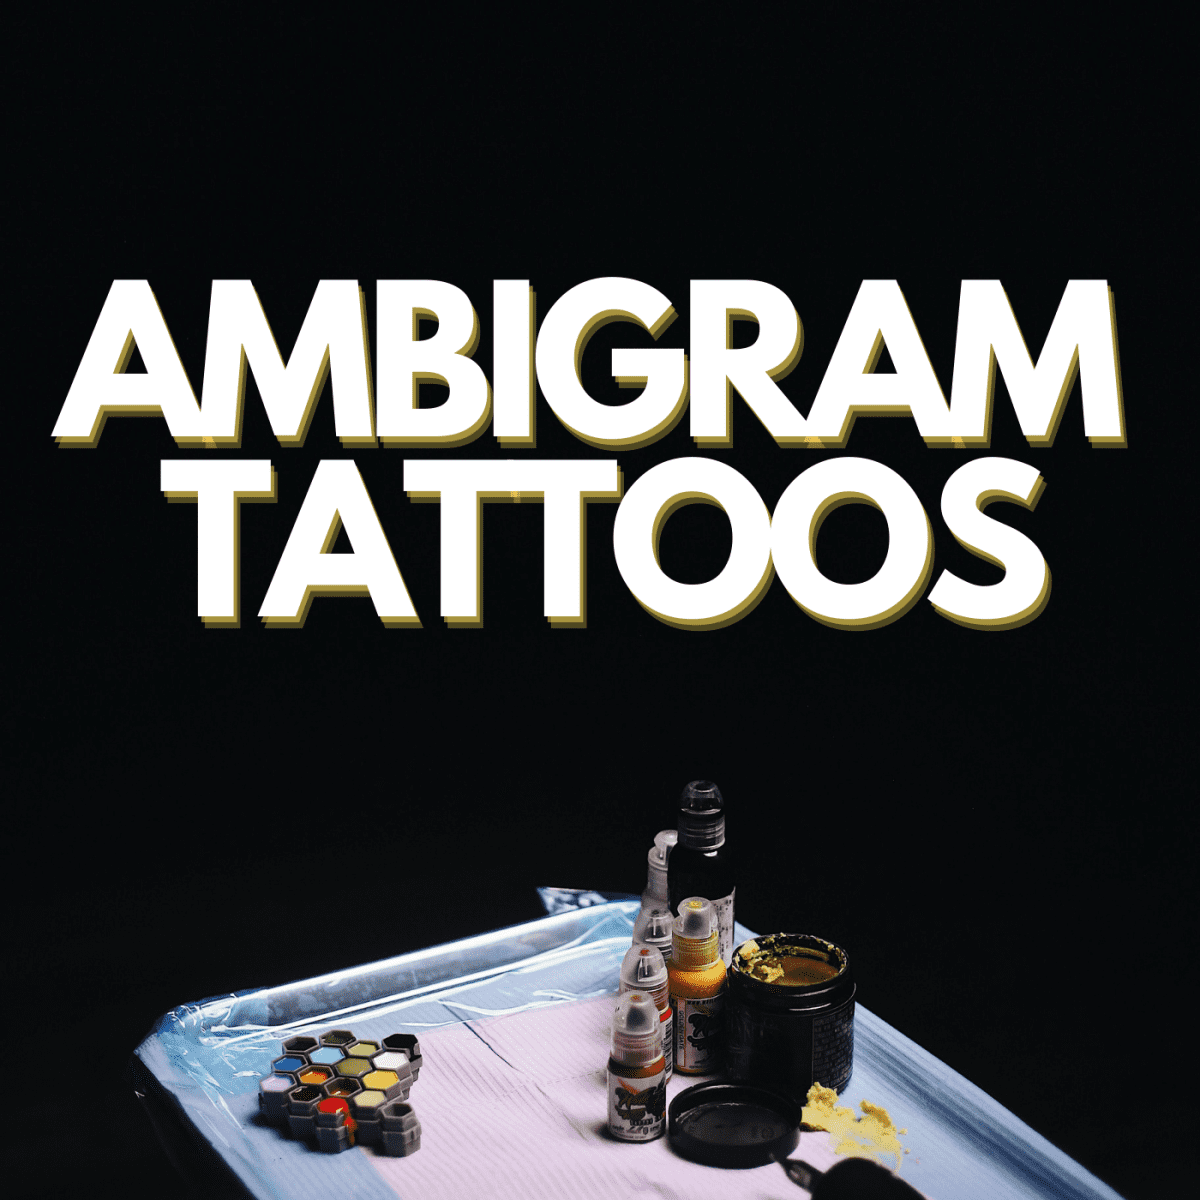 tattoo ideas ambigram tattoos